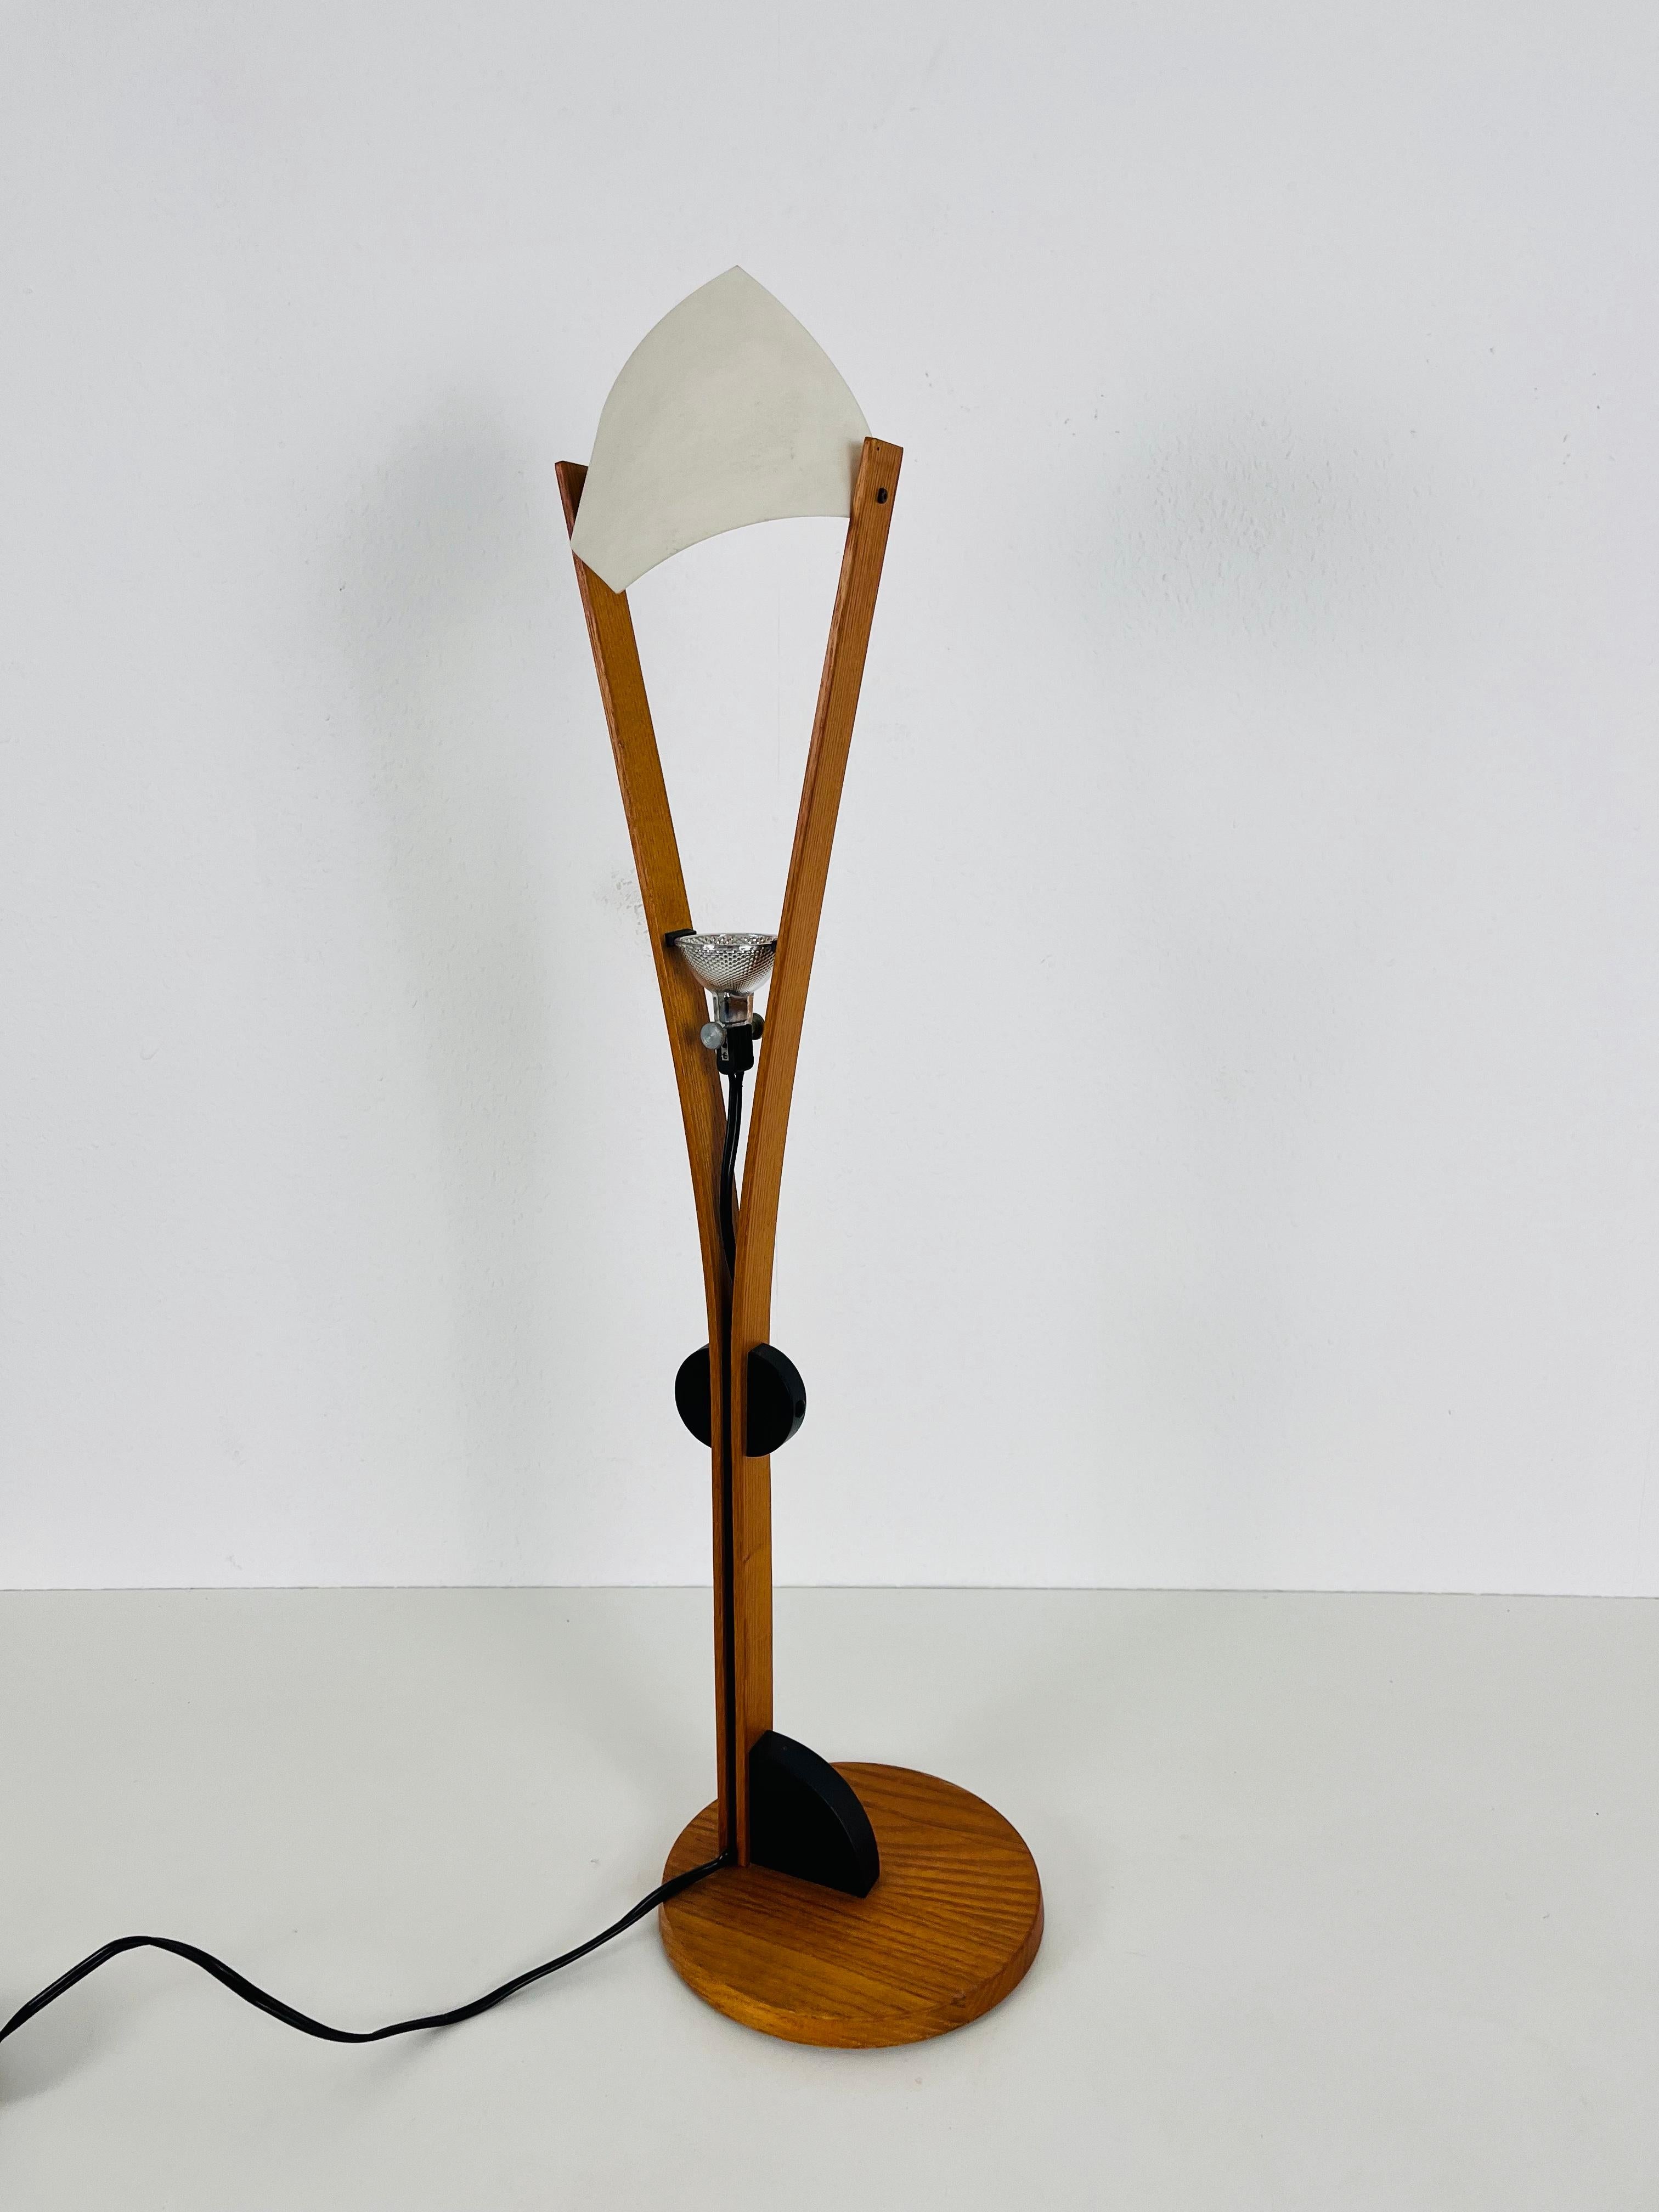 Une lampe de table en bois fabriquée par Domus dans les années 1960. Le corps de la lampe est en bois. Cette lampe présente un design scandinave typique. L'ampoule est graduable avec le régulateur noir.

Très bon état vintage. Fonctionne avec les